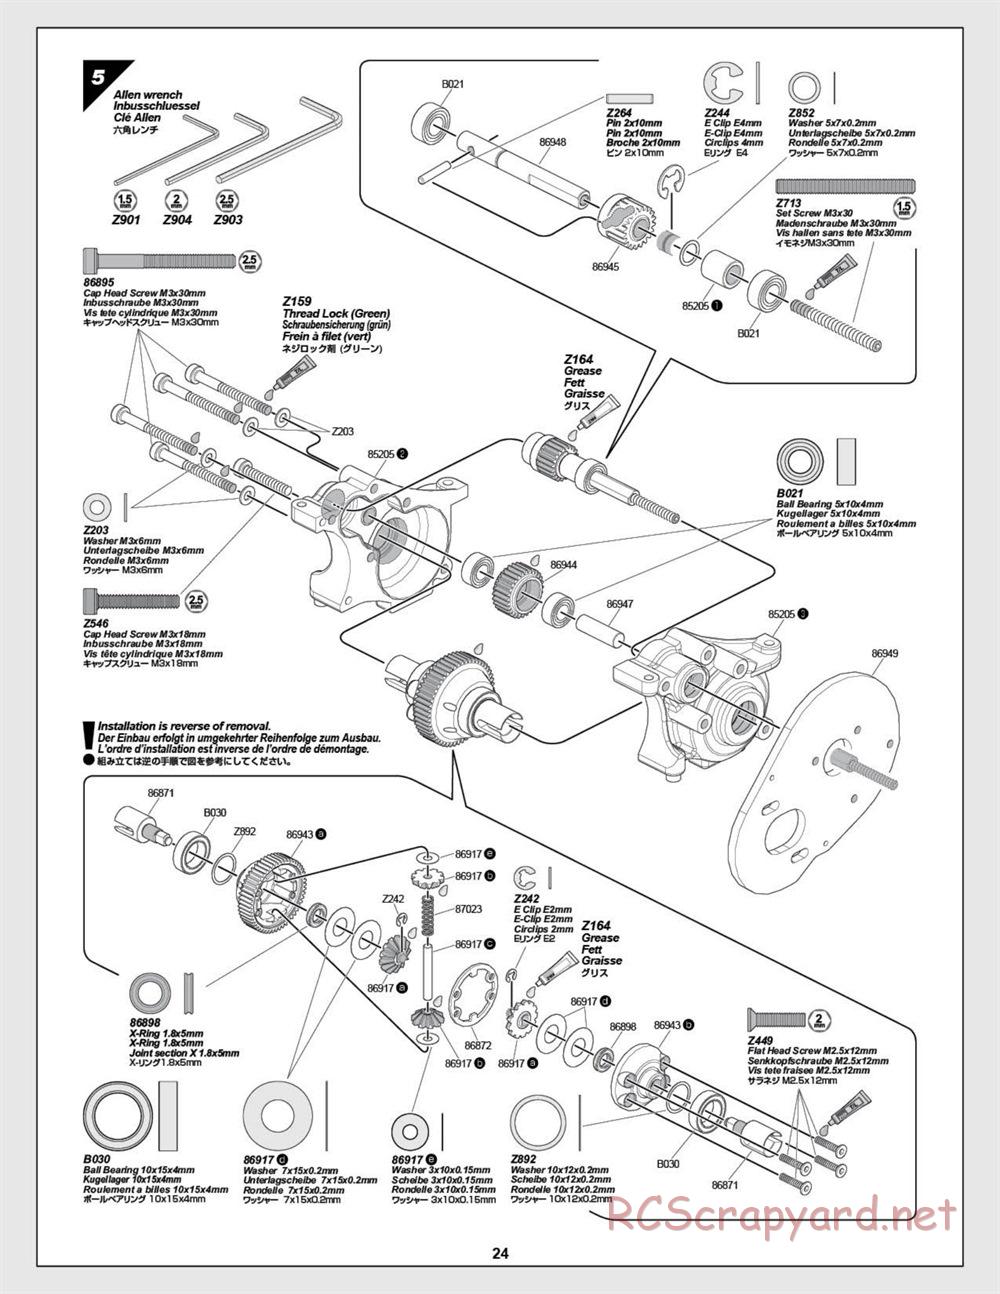 HPI - E-Firestorm-10T - Manual - Page 24